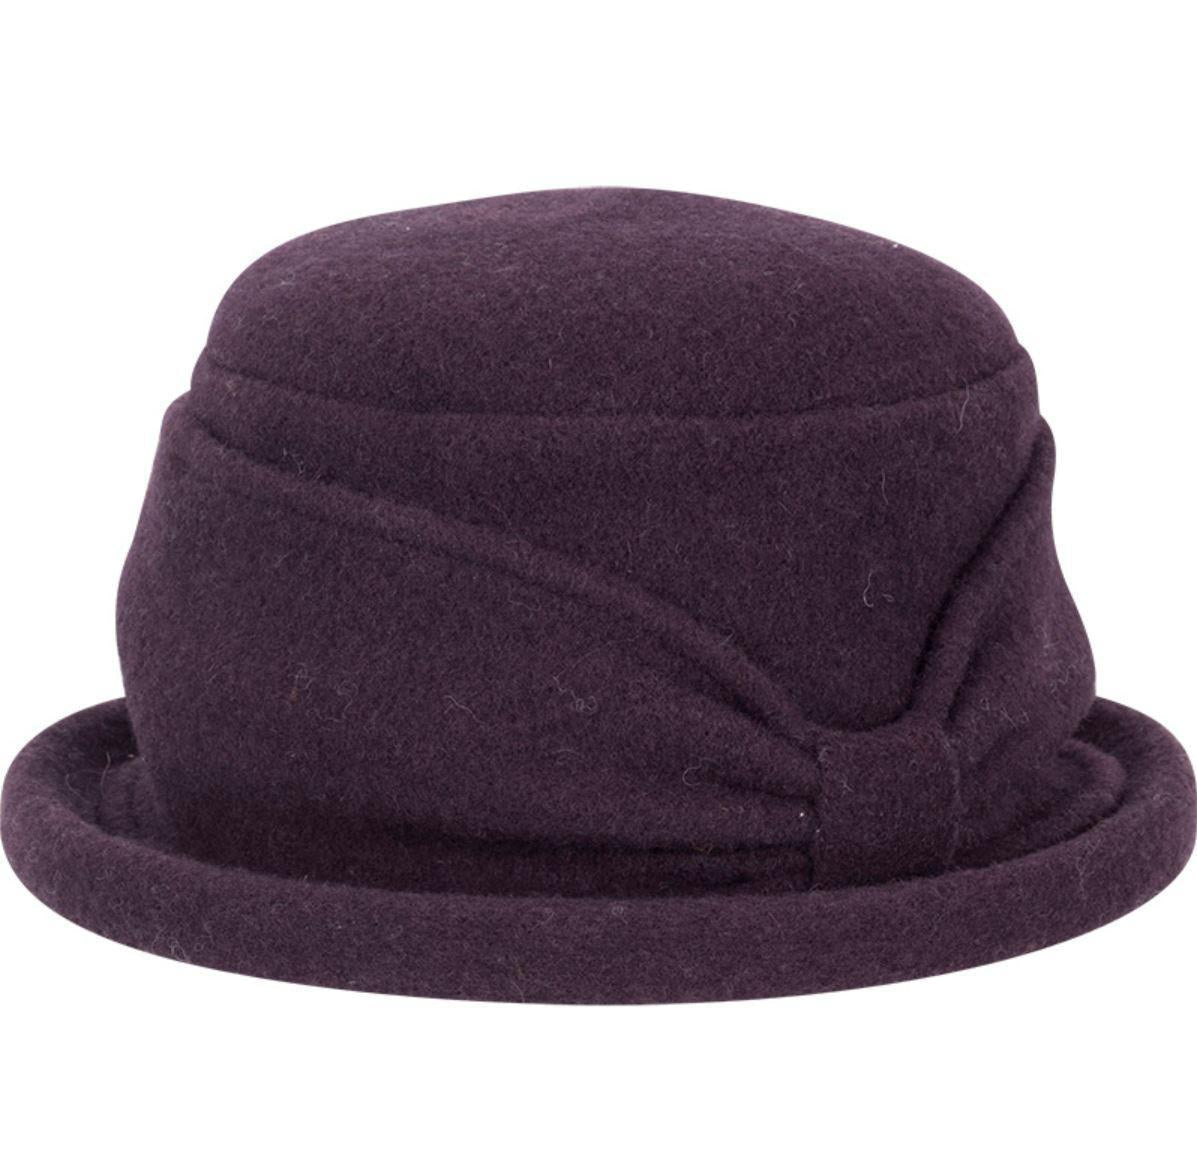 Women's Boiled Wool Cloche Hat Silva